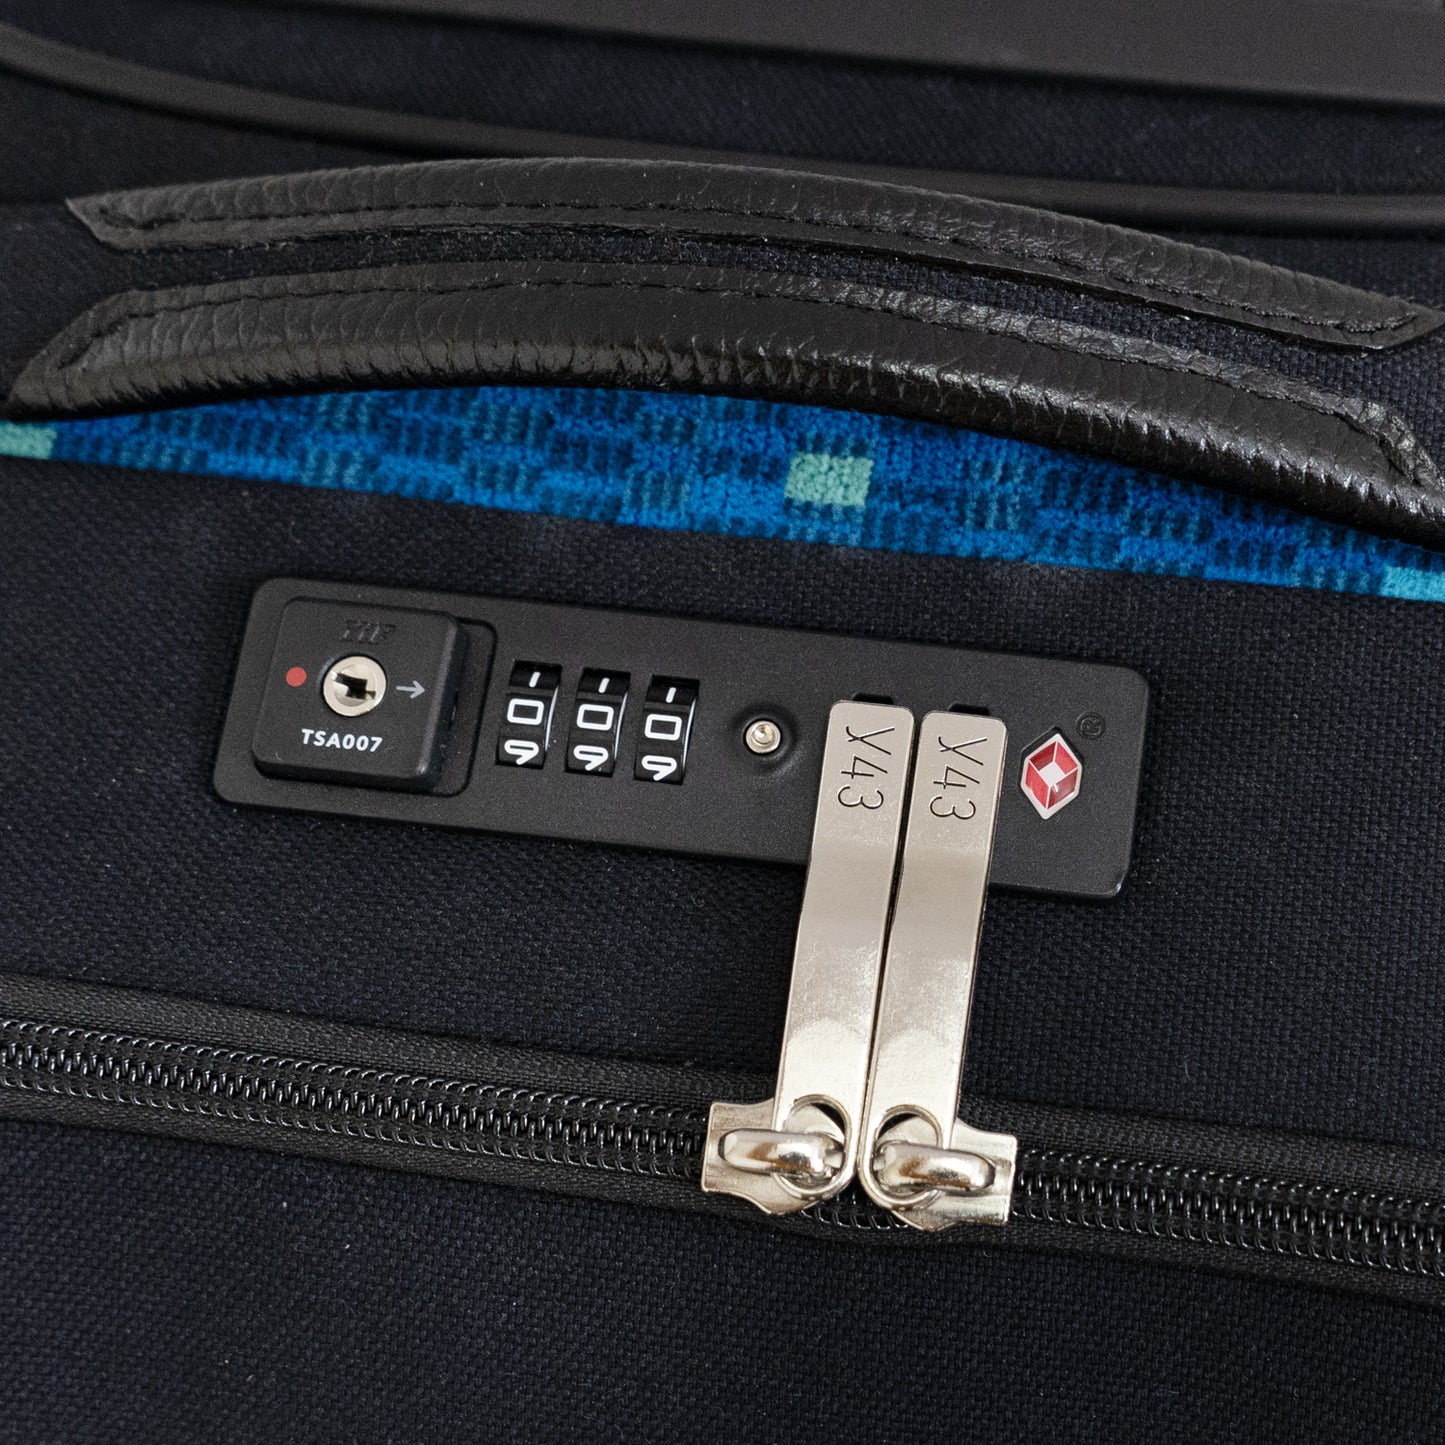 トップハンドルと、施錠したまま預け入れが可能なTS認可ダイヤルロック(Travel Sentry®認可ロック)搭載「N700系typeA東海道新幹線モケットソフトスーツケース」